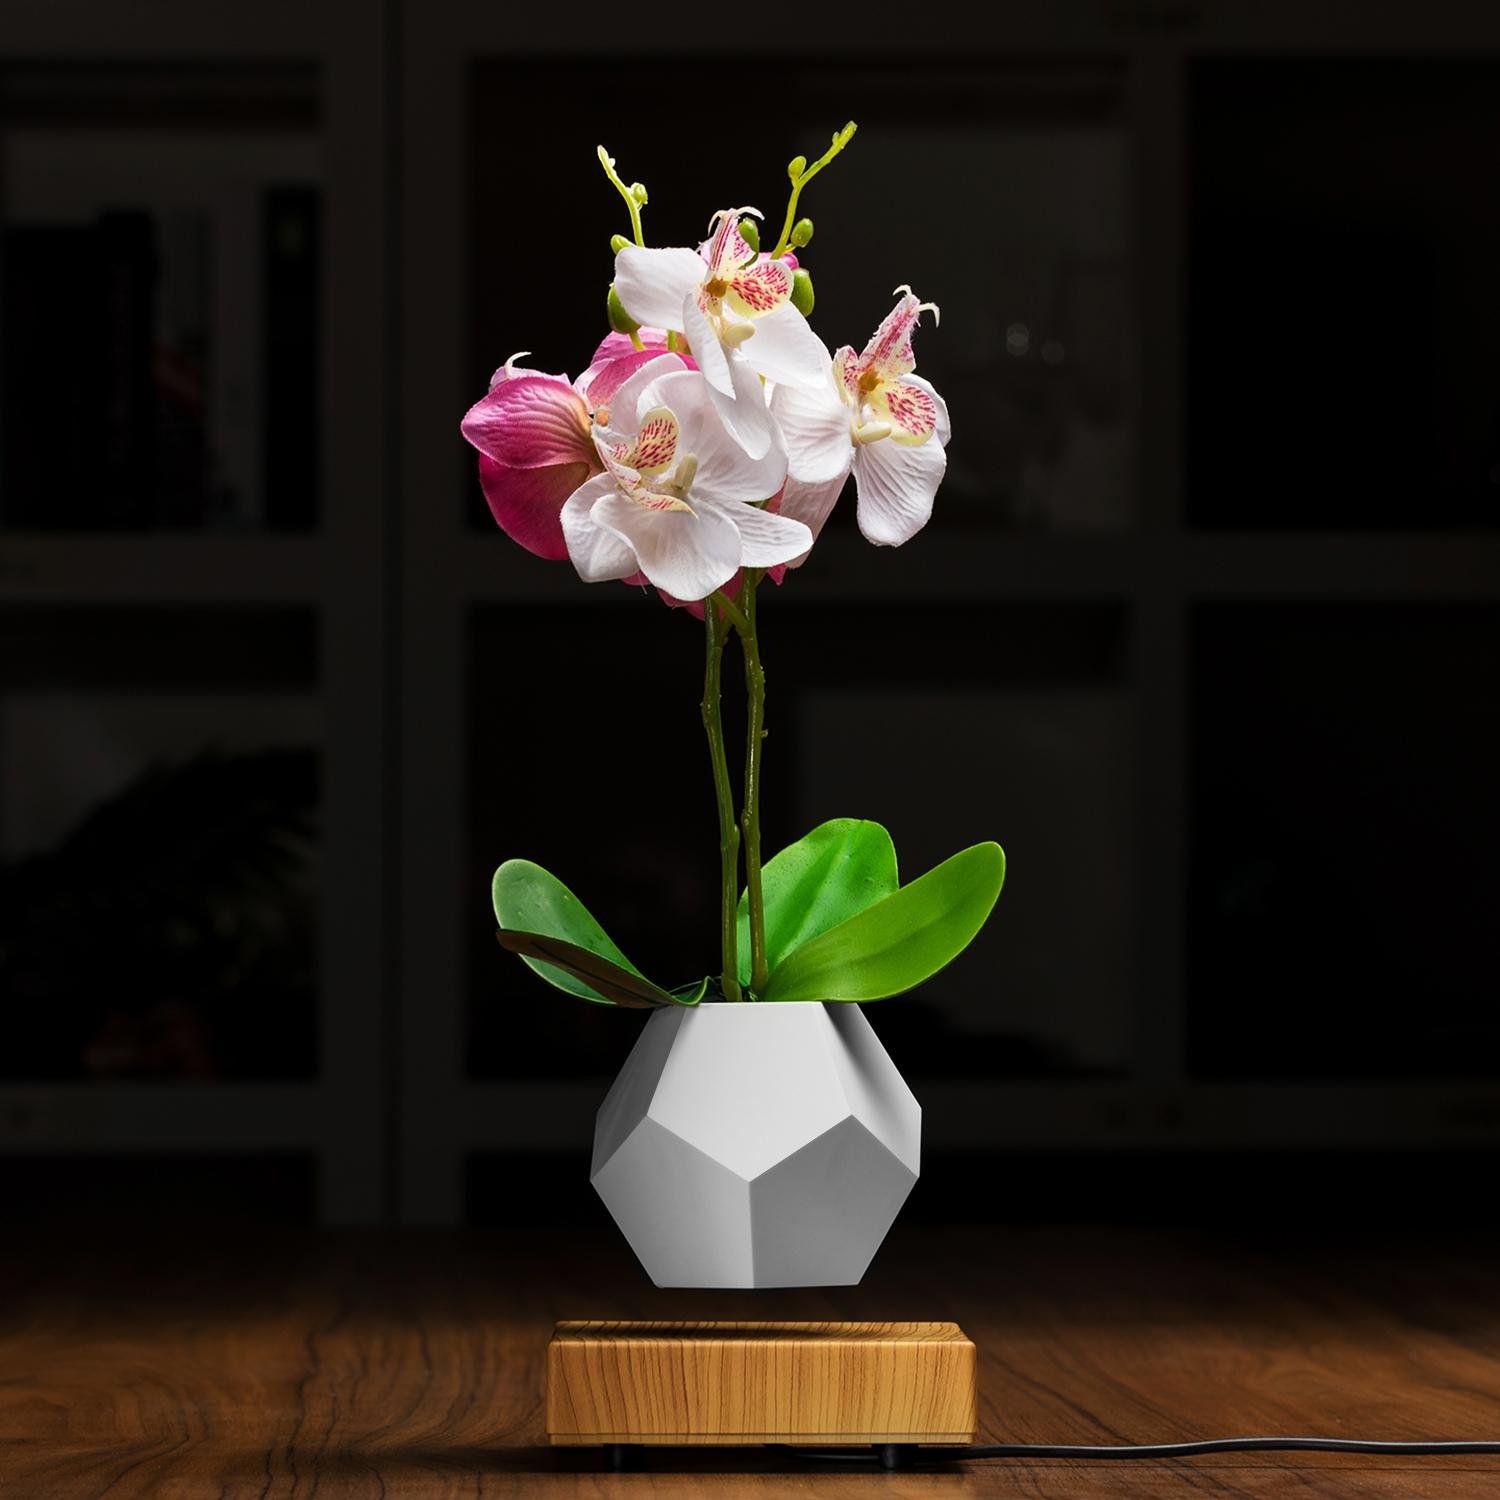  magnetic levitation plant pot air bonsai for decoration gift  4